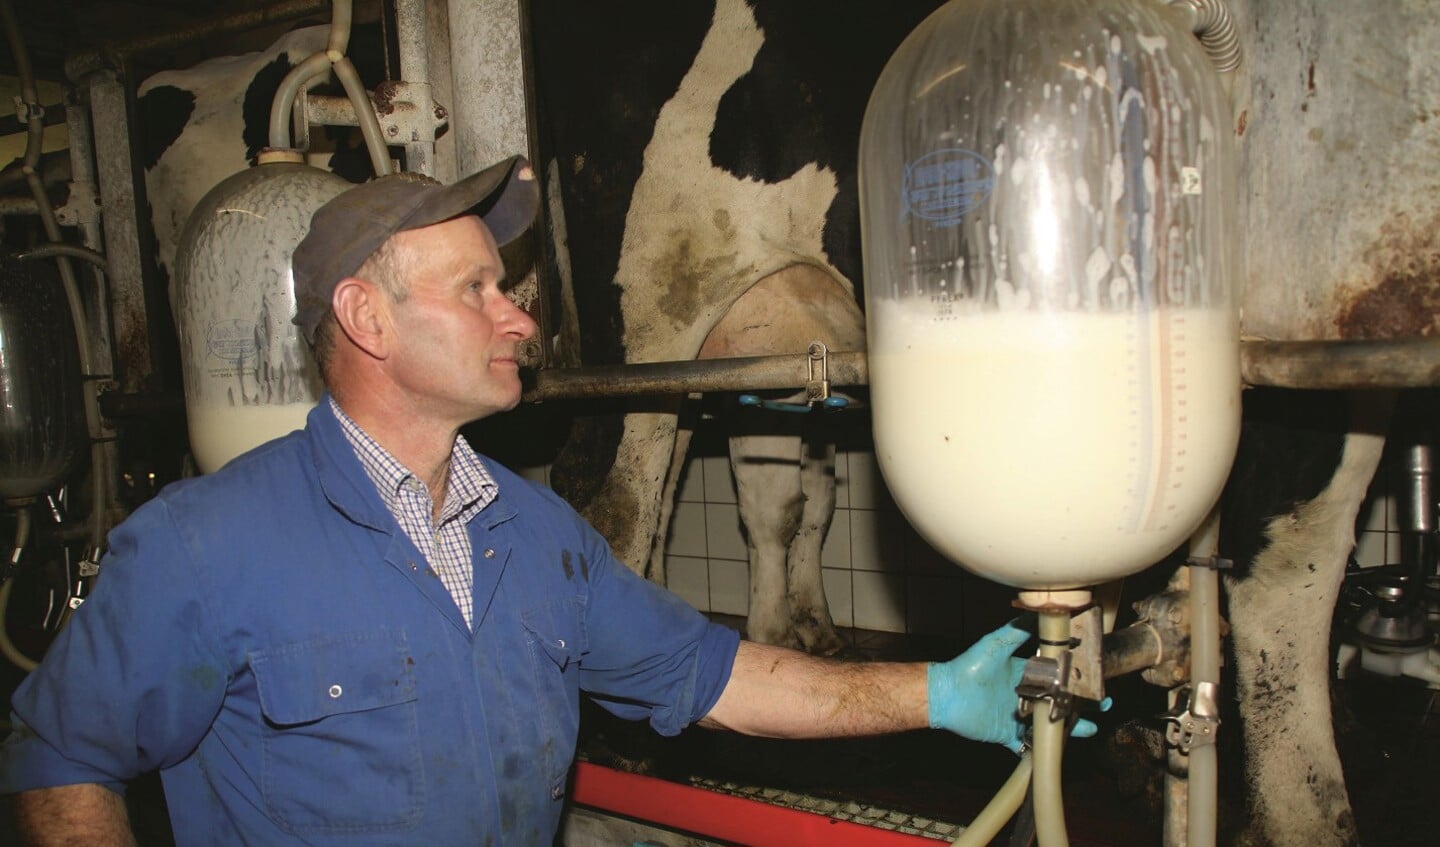 Leiderdorp, Achthovenerweg. Arie Roest melkt in de visgraatmelkput met steeds twee maal vijf koeien tegelijk, het melksysteem dat het meest praktisch voor hem is. (maart 2012)